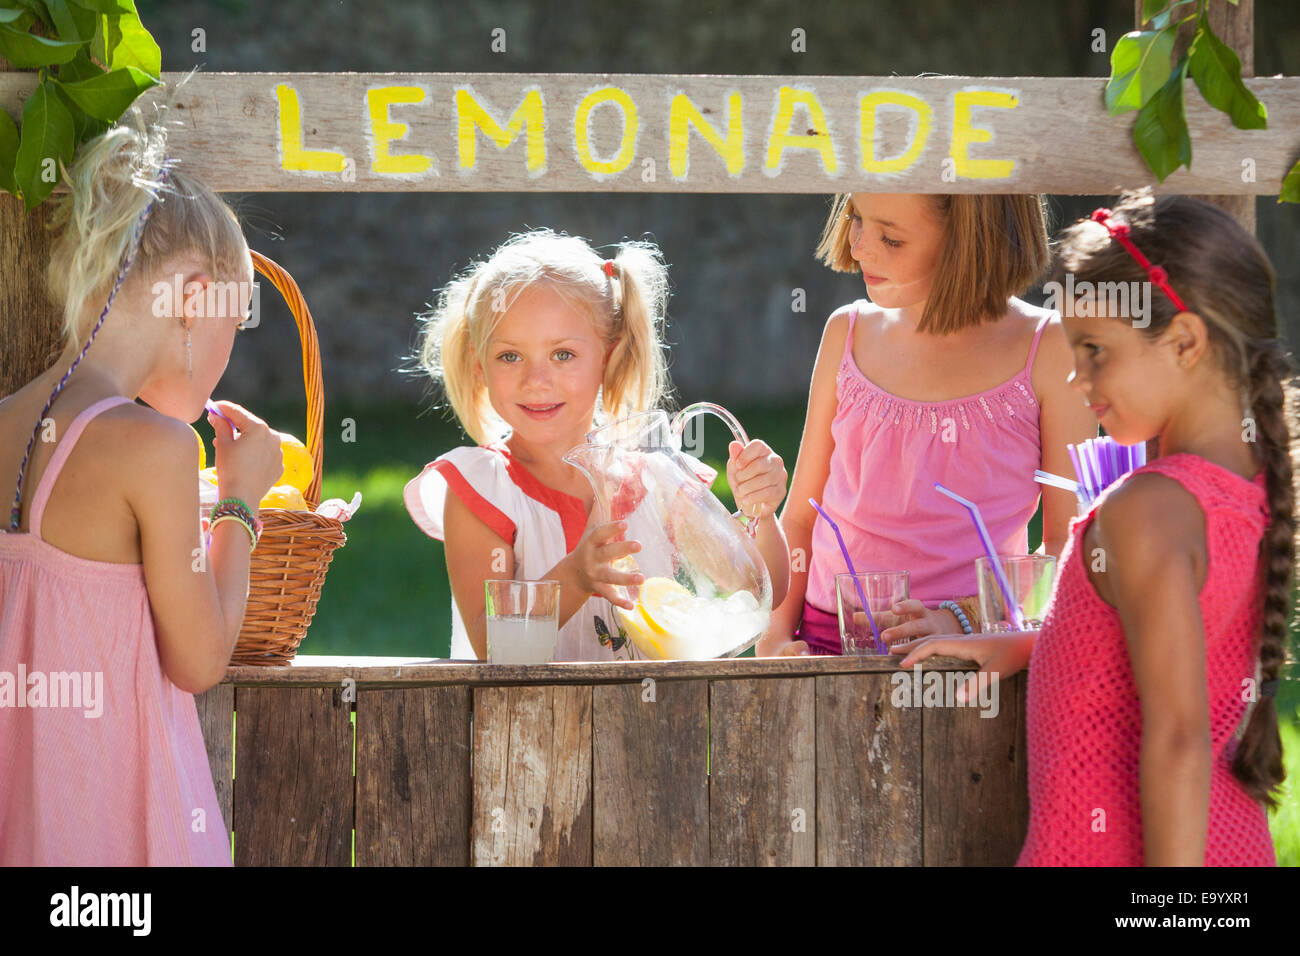 Cándido retrato de cuatro niñas en Lemonade Stand en estacionamiento Foto de stock